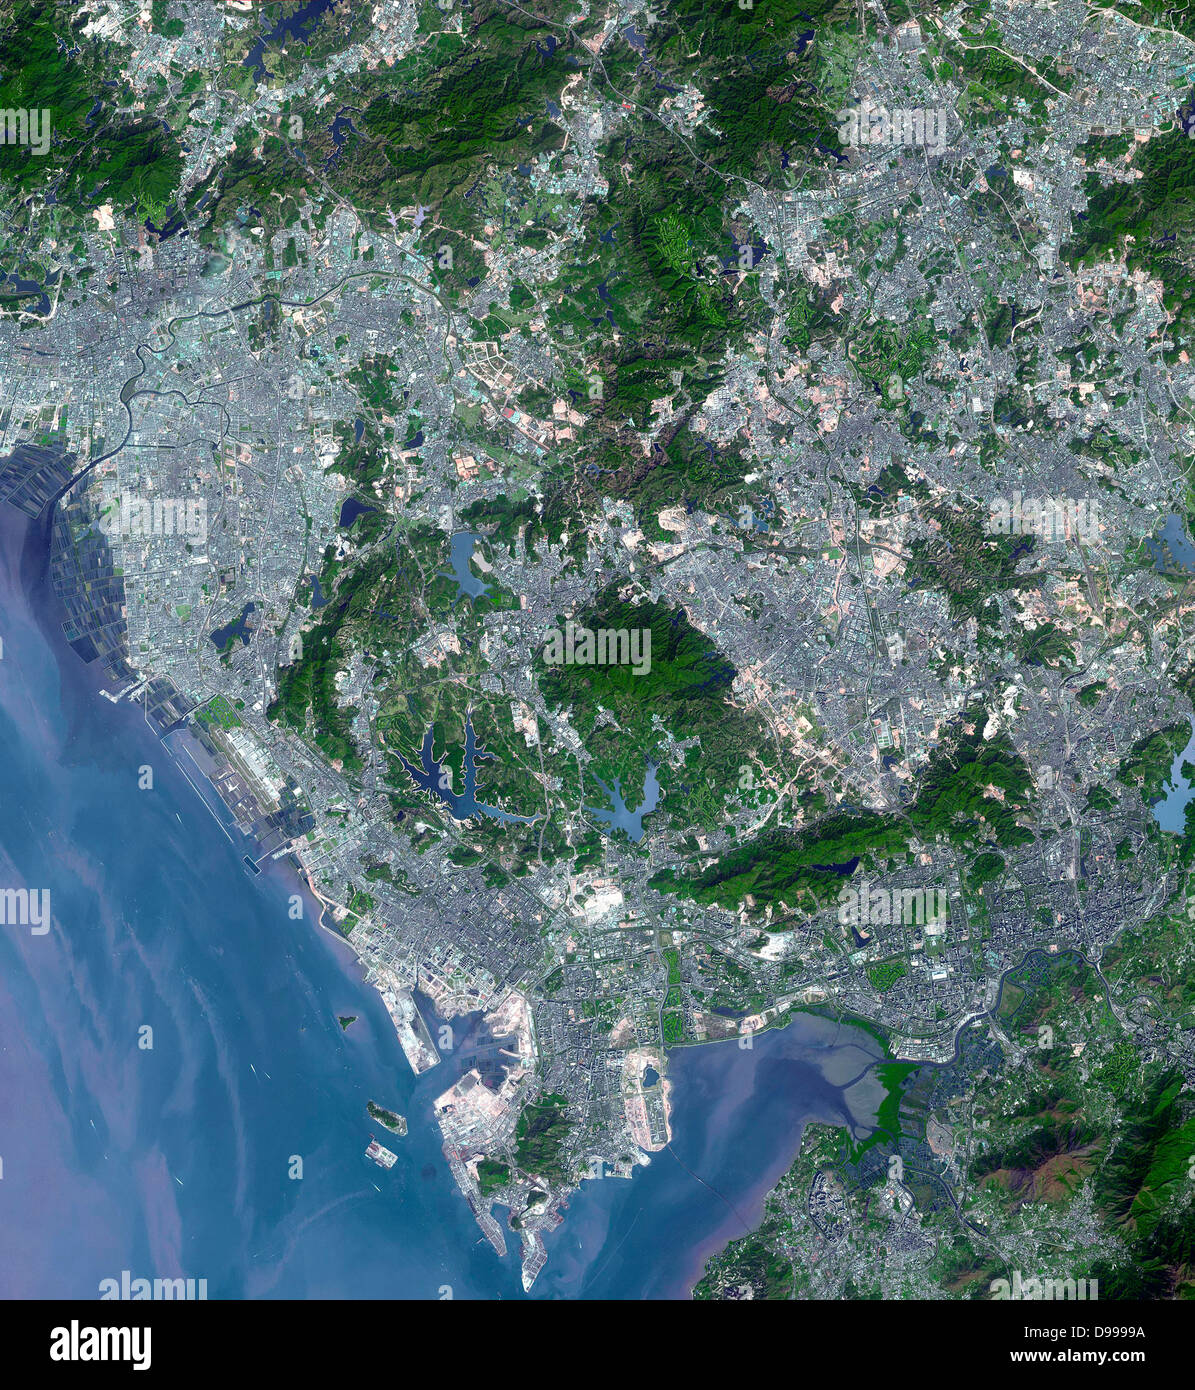 Shenzhen ist eine Stadt der Sub-provinziellen administrativen Status in der südchinesischen Provinz Guangdong, unmittelbar nördlich von Hongkong und im Delta des Pearl River entfernt. Nachweis der Urbanisierung ist in diesen beiden Bildern deutlich. 15. November 1999 und 1. Januar 2008. Satellitenbild. Stockfoto